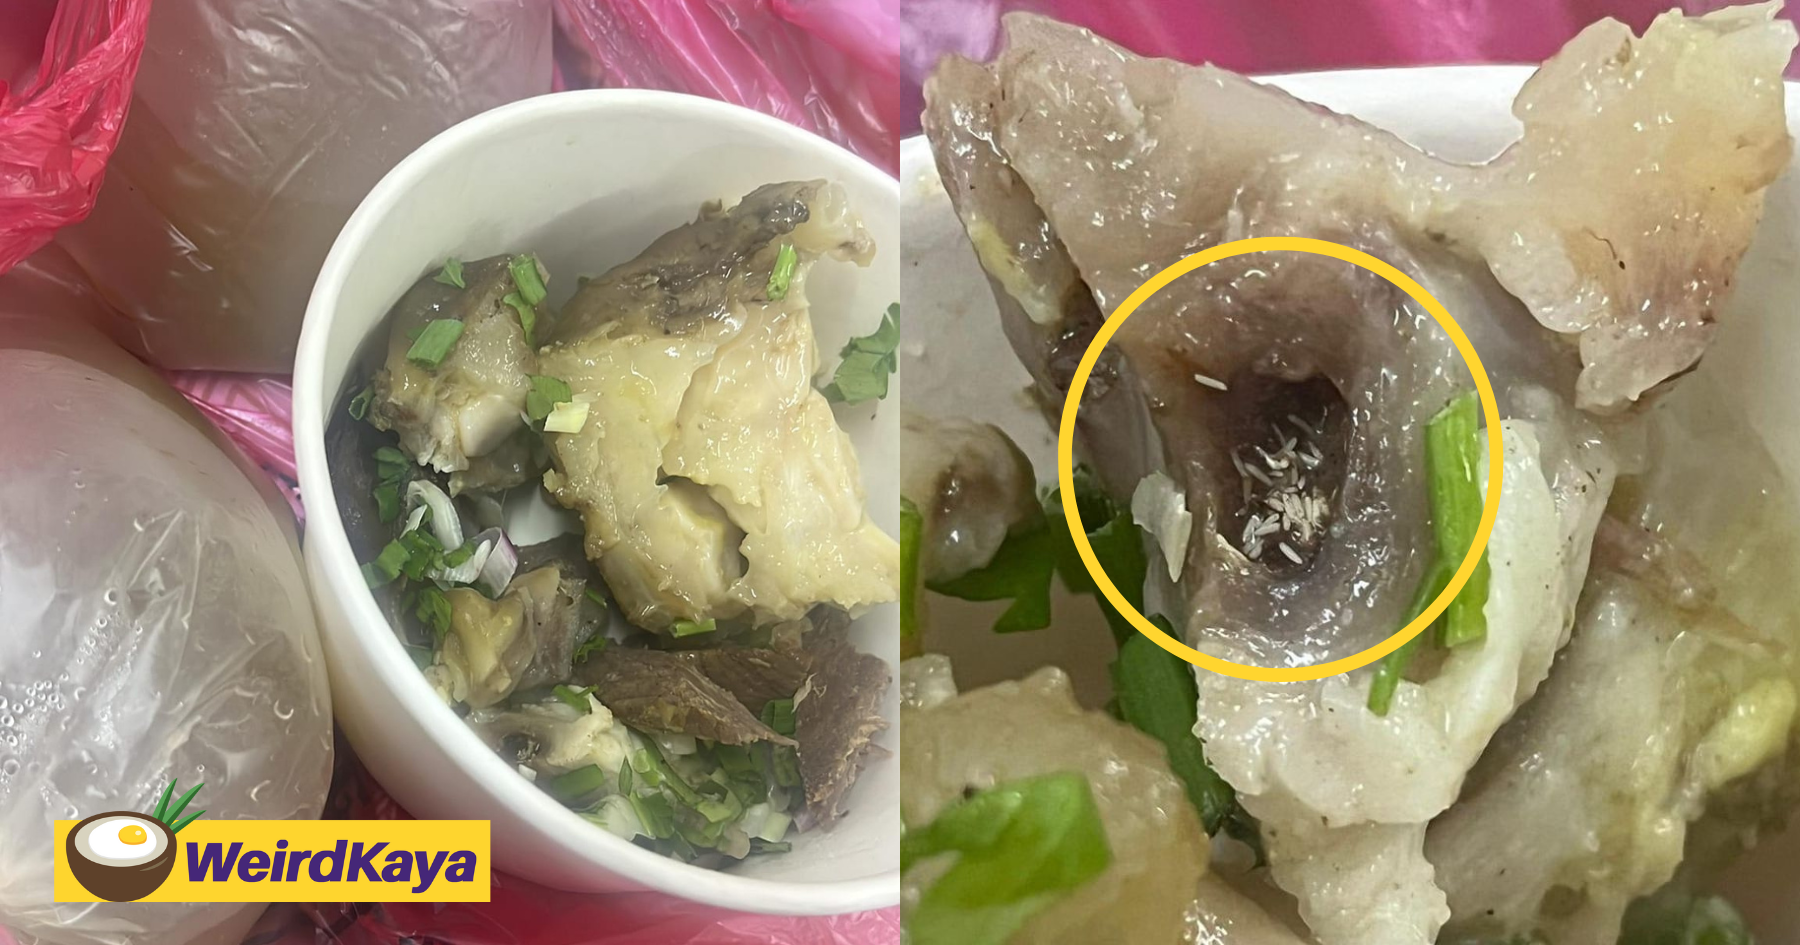 M'sian horrified to see maggots inside soup he bought from ramadan bazaar at melaka | weirdkaya